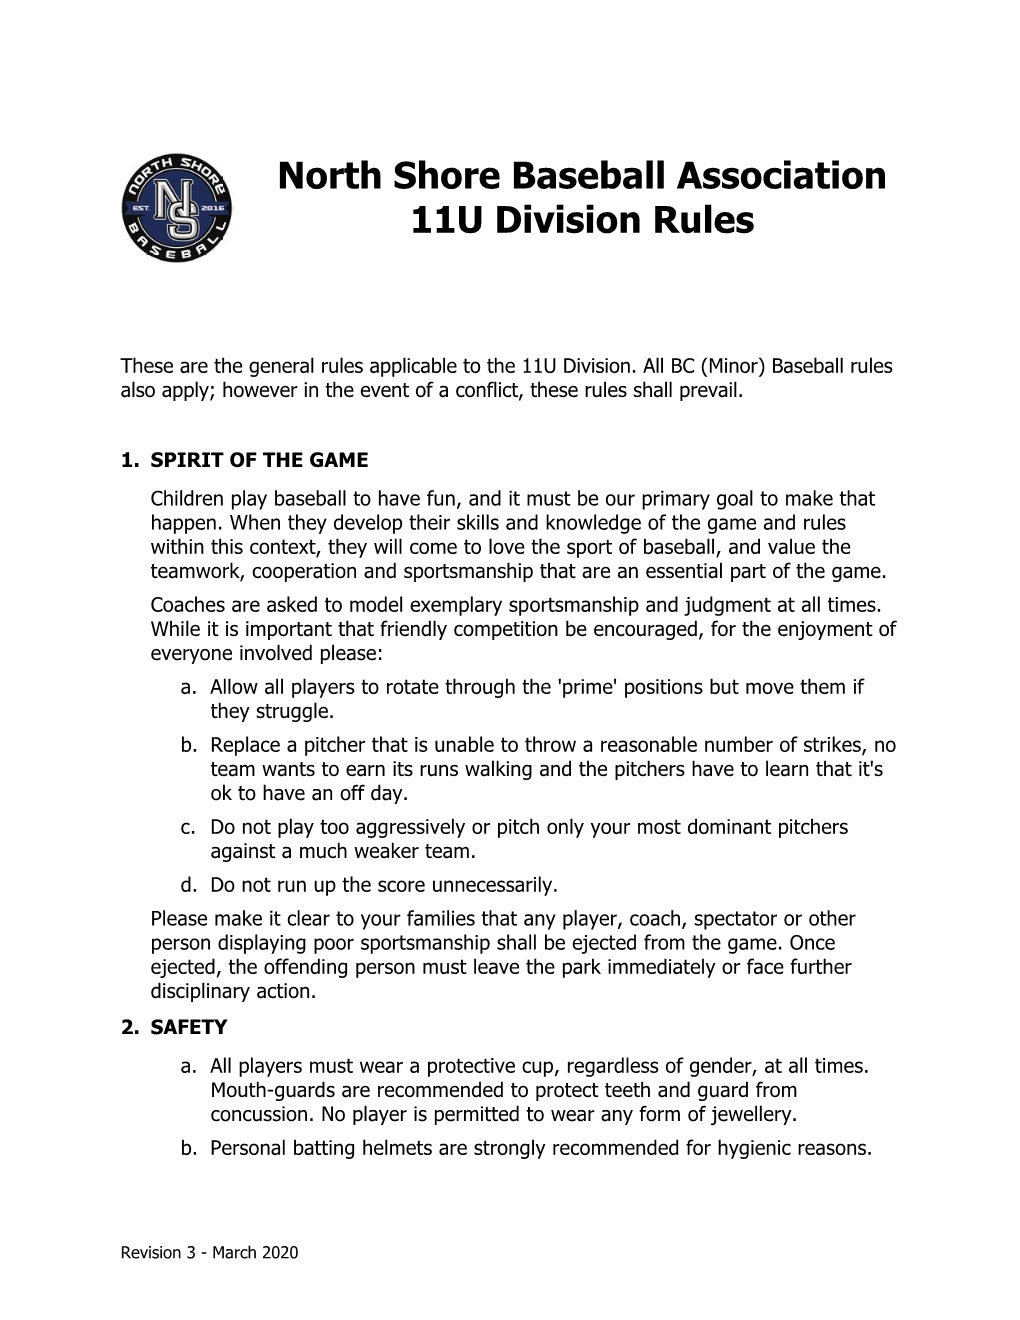 North Shore Baseball Association 11U Division Rules